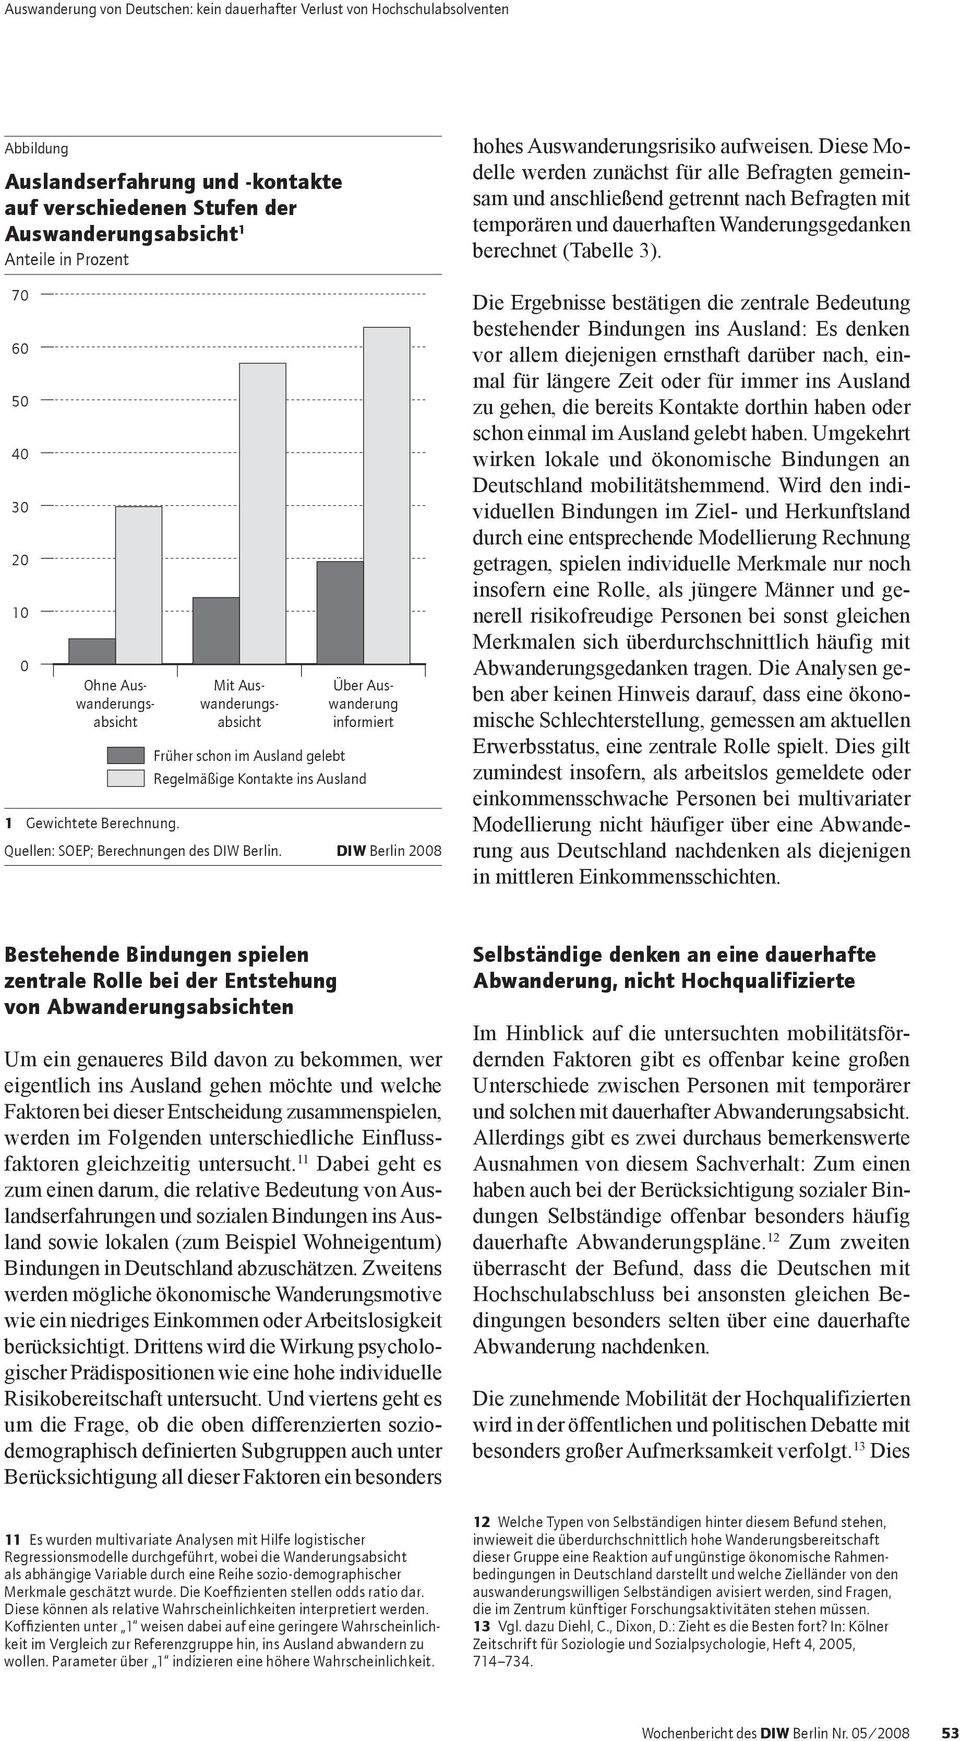 DIW Berlin 2008 hohes Auswanderungsrisiko aufweisen.